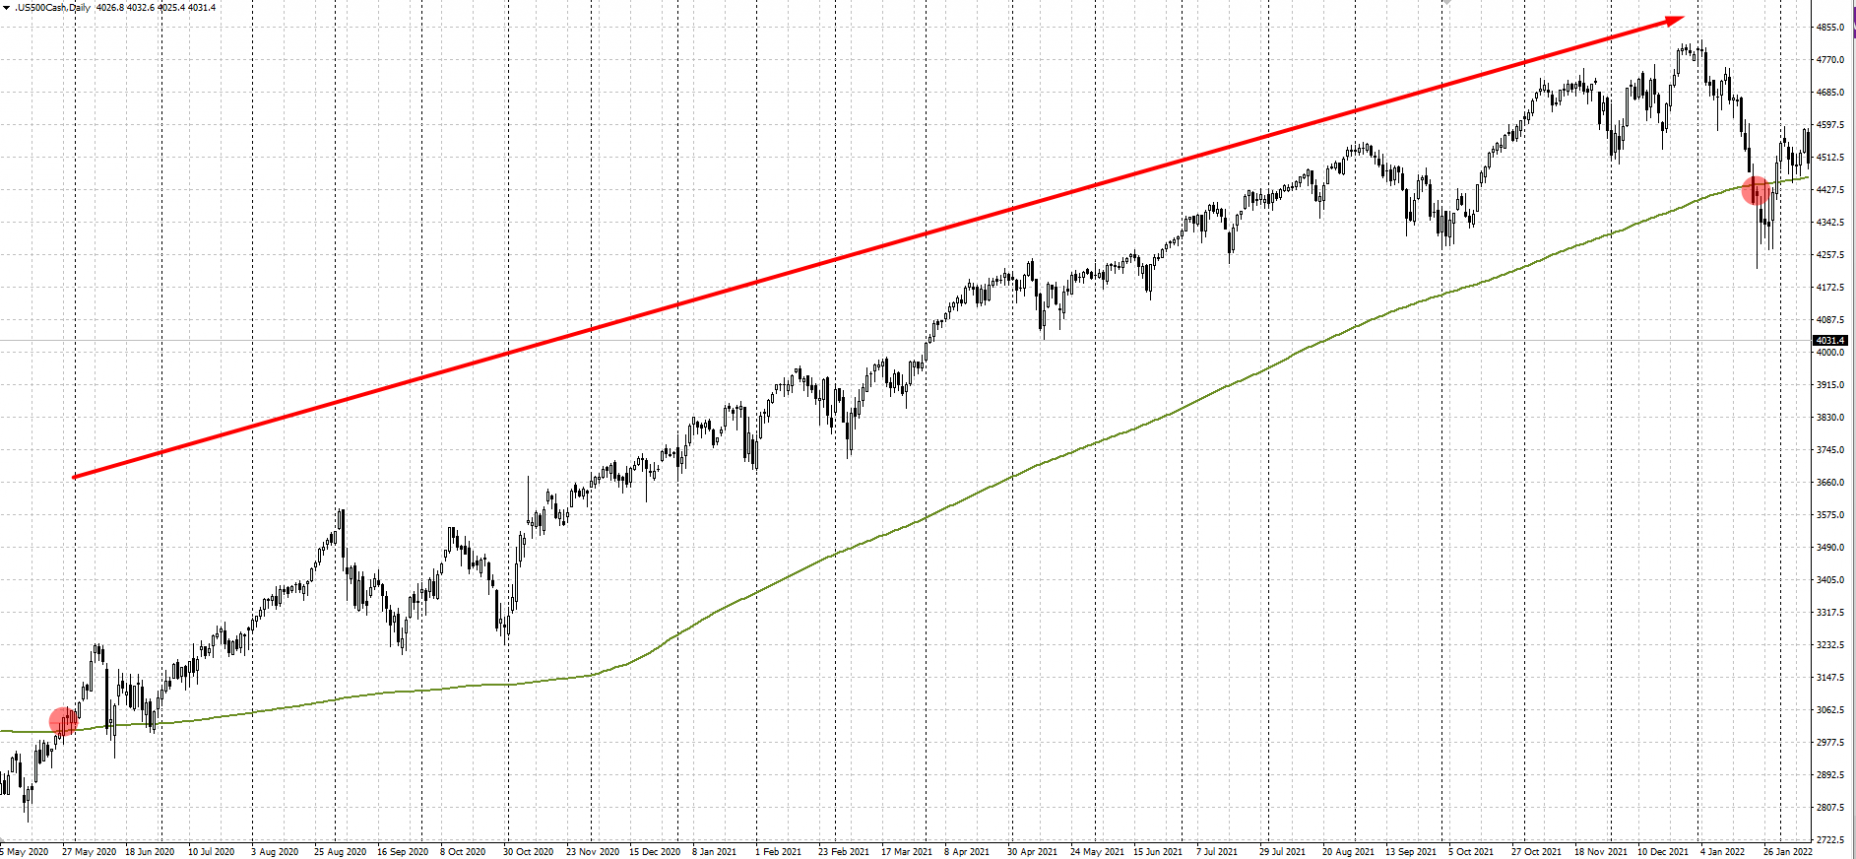 Ví dụ mua về chiến lược “Theo xu hướng của S&P 500"